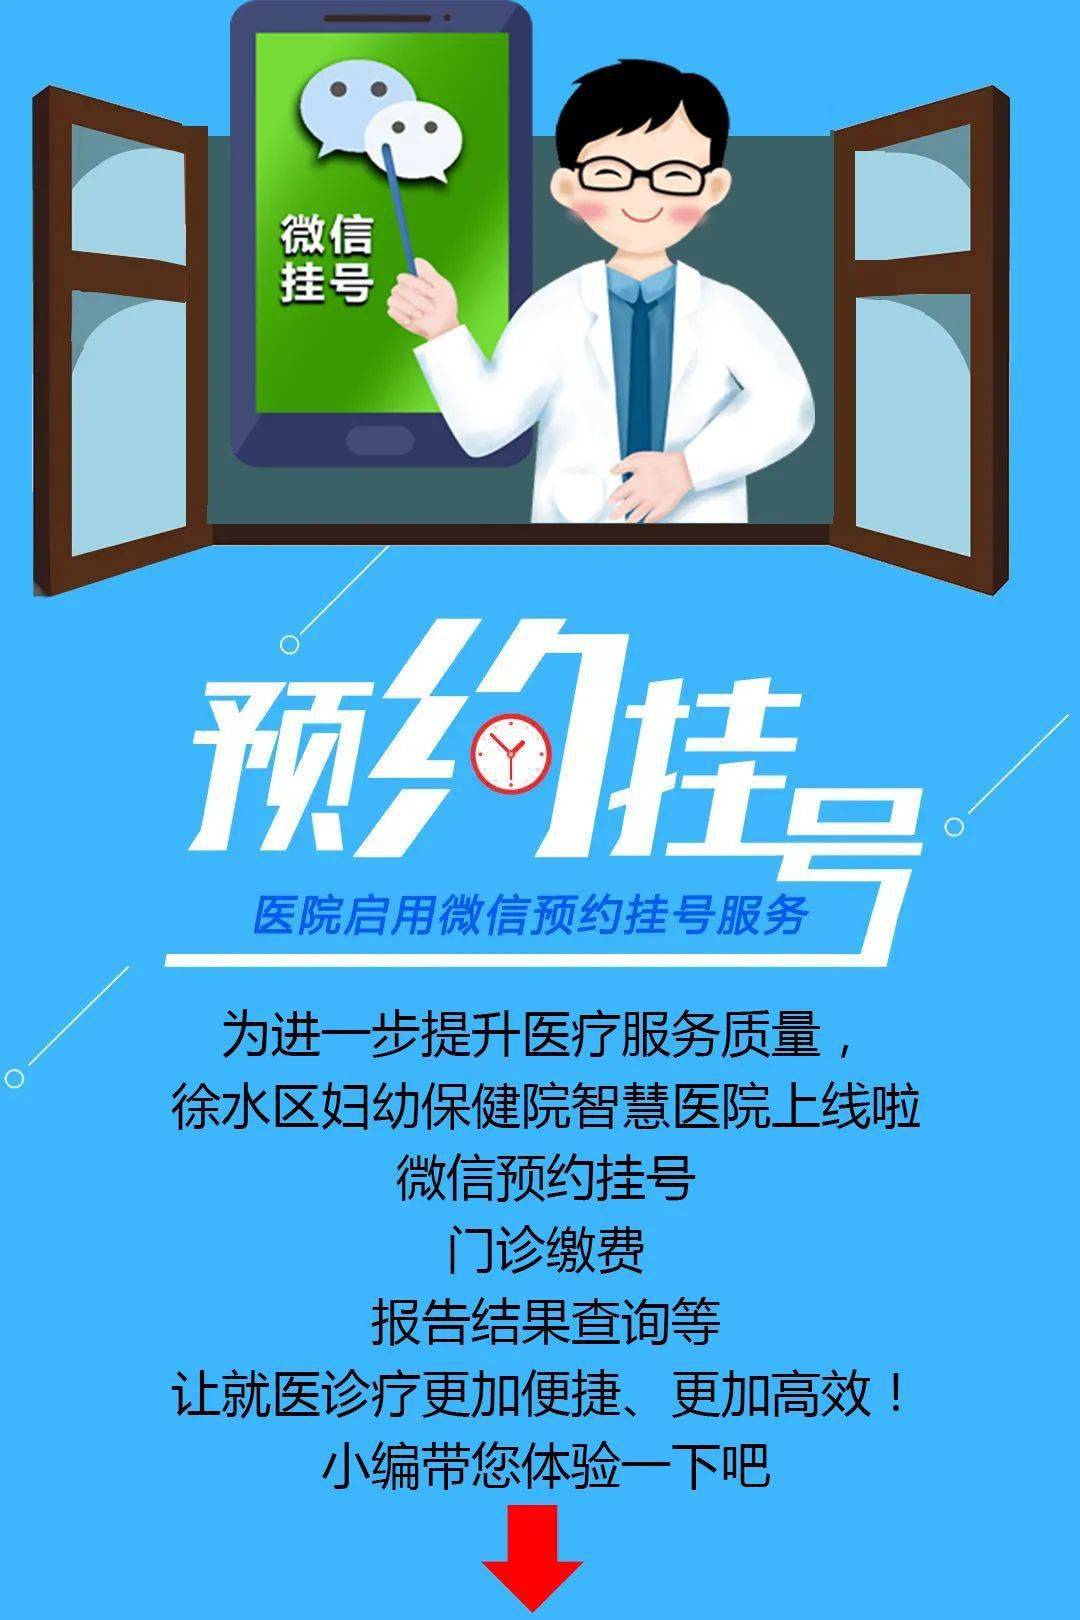 北京市海淀妇幼保健院黄牛代挂预约专家号，使您省去诸多麻烦看病无忧的简单介绍